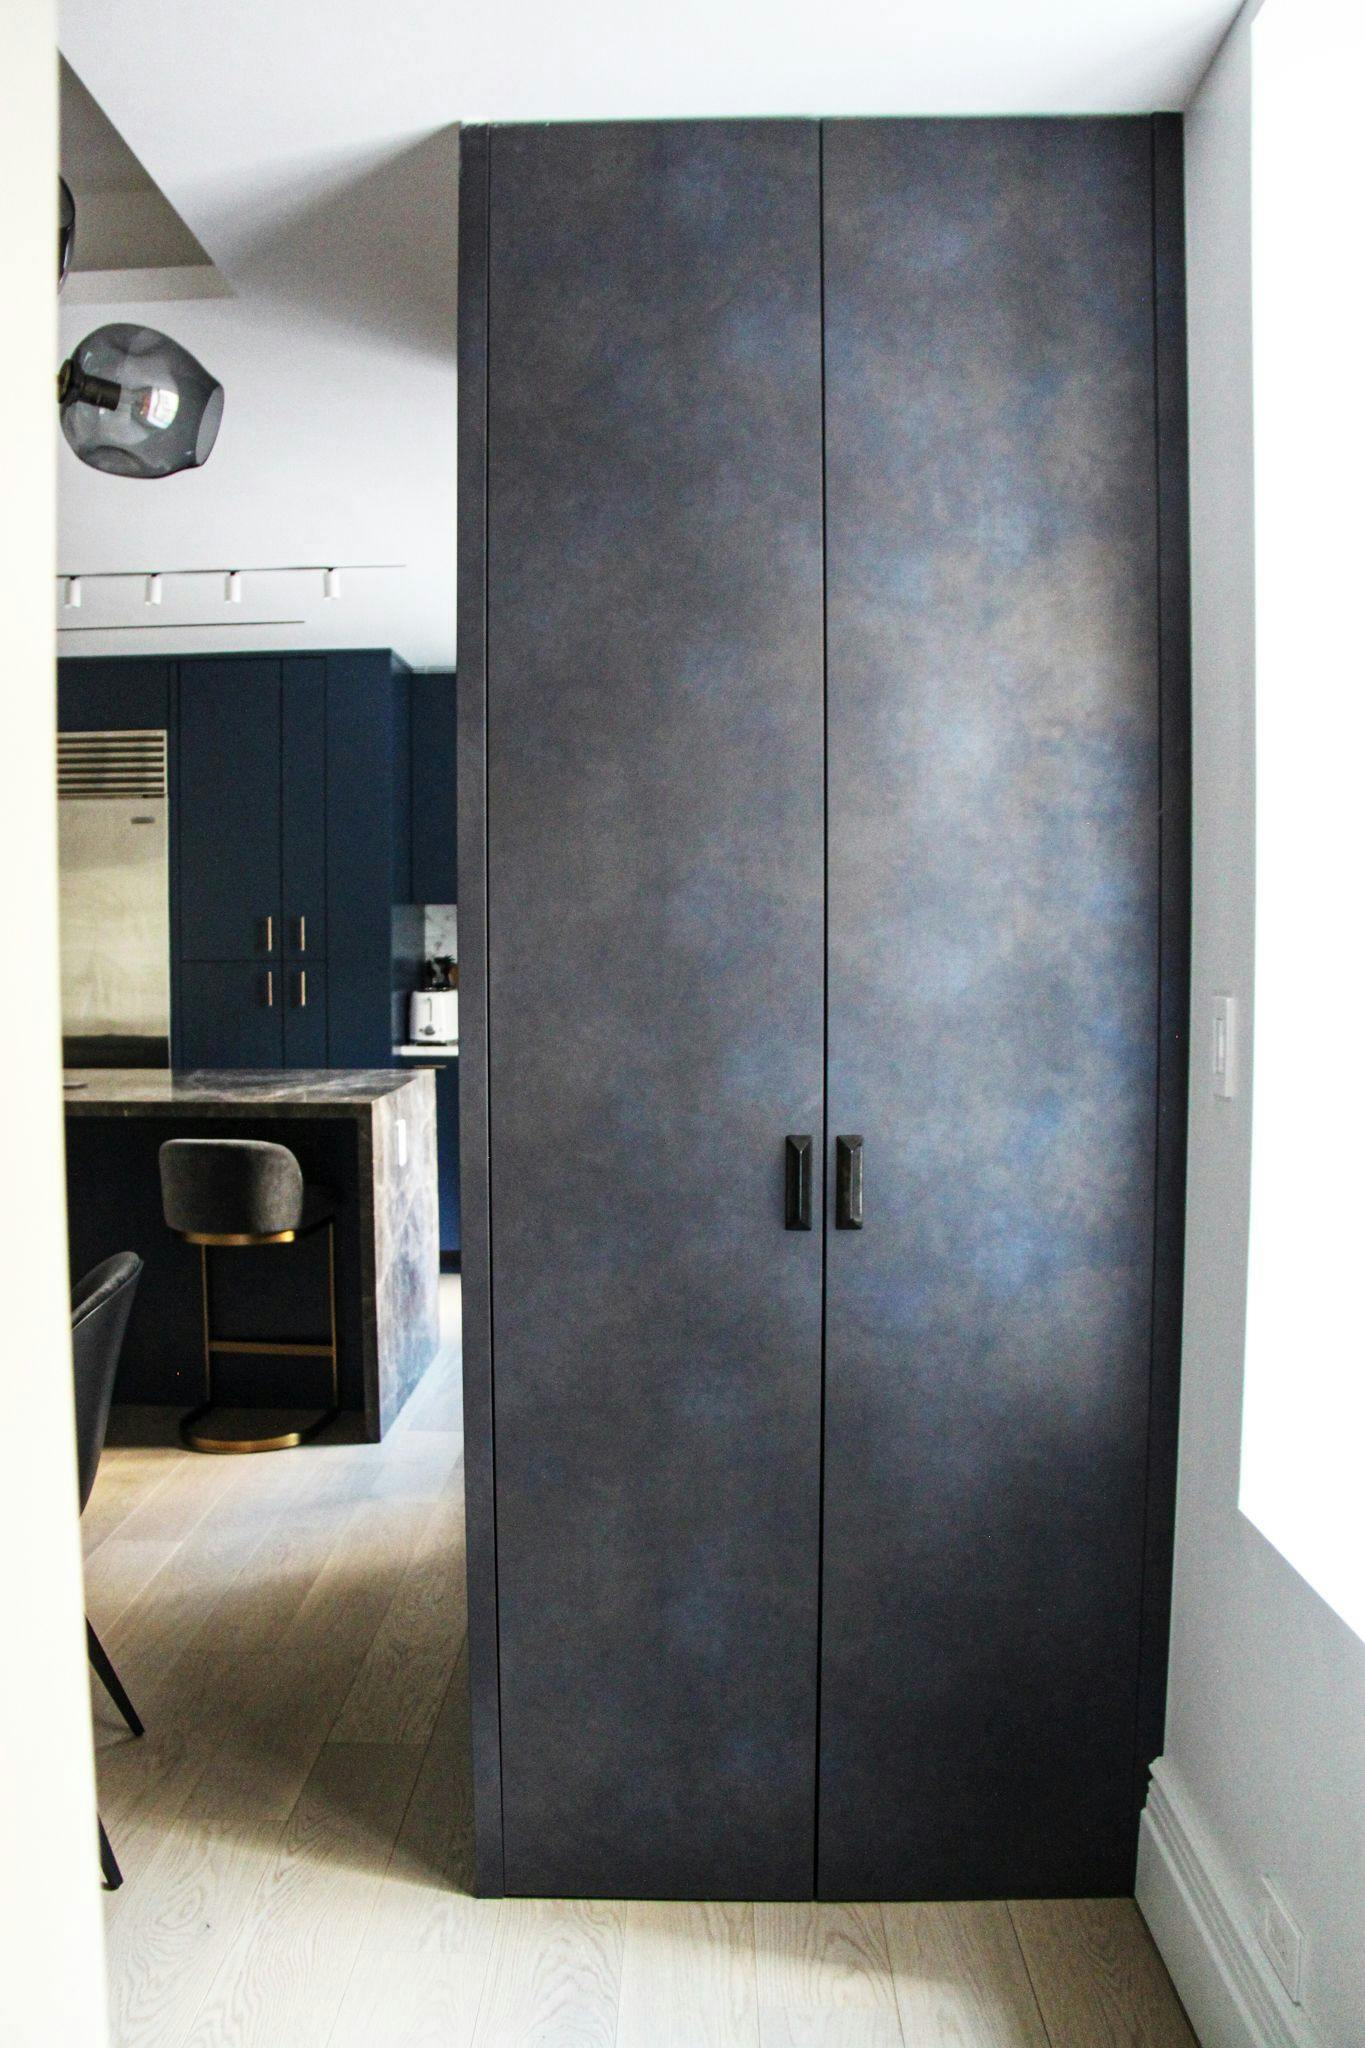 A dark blue kitchen with a black cabinet.